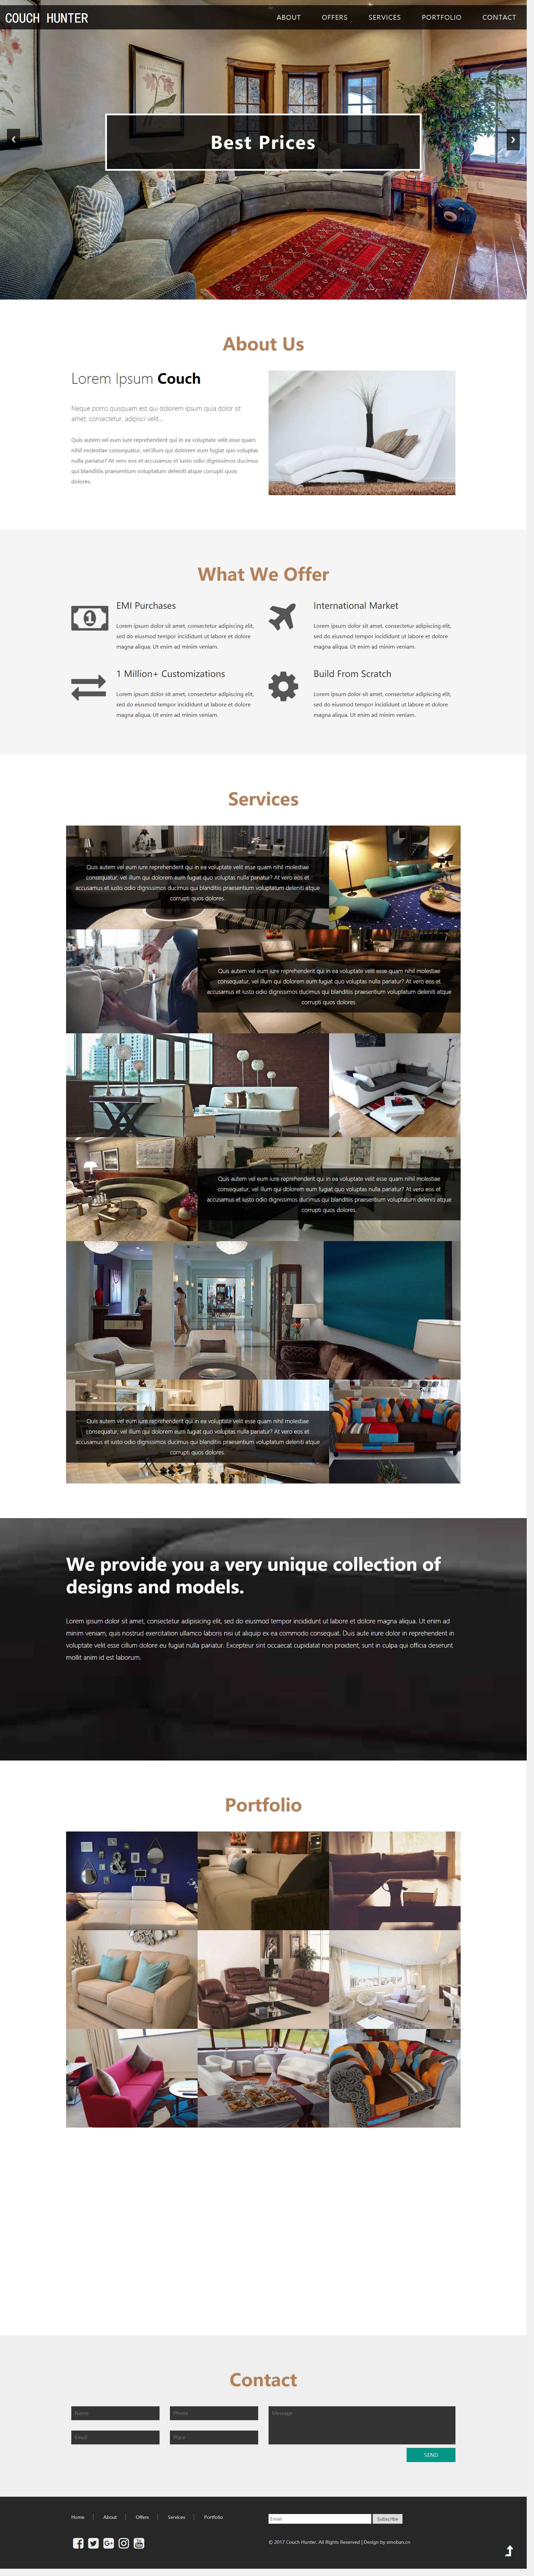 黑色欧美风格的室内家具企业网站源码下载